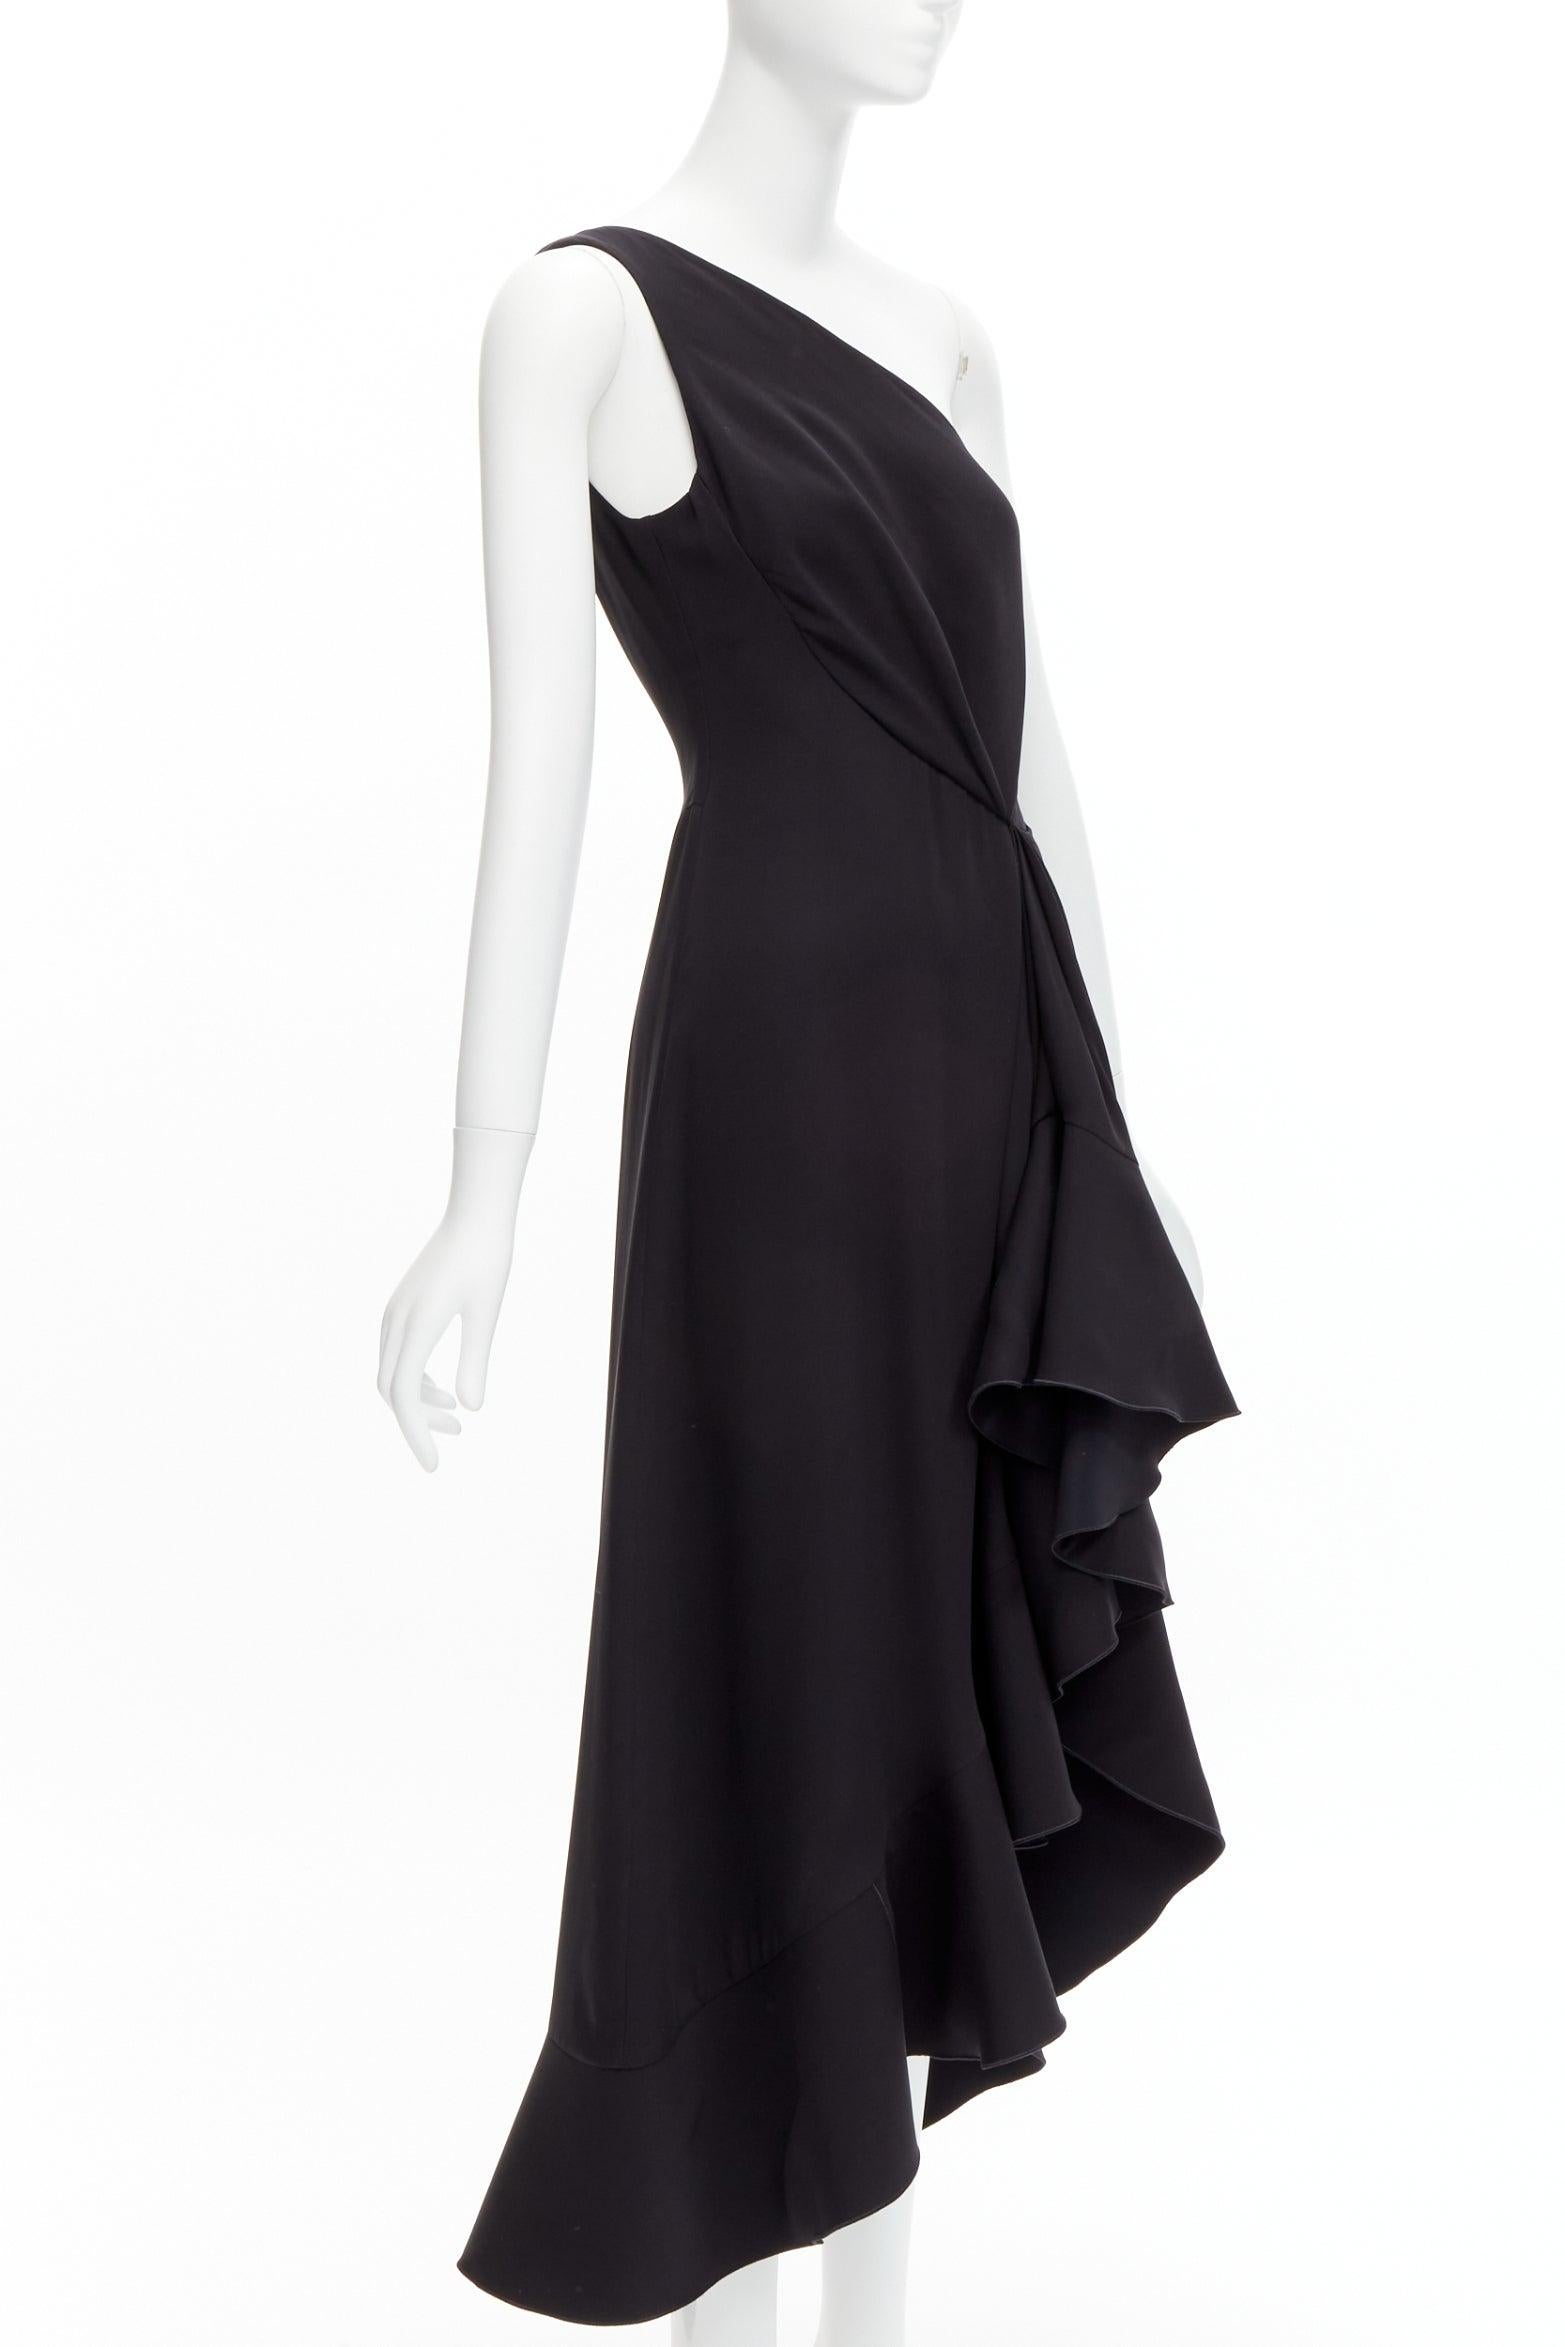 Black DION LEE silk one shoulder drape front asymmetric ruffle dress AUS10 M For Sale